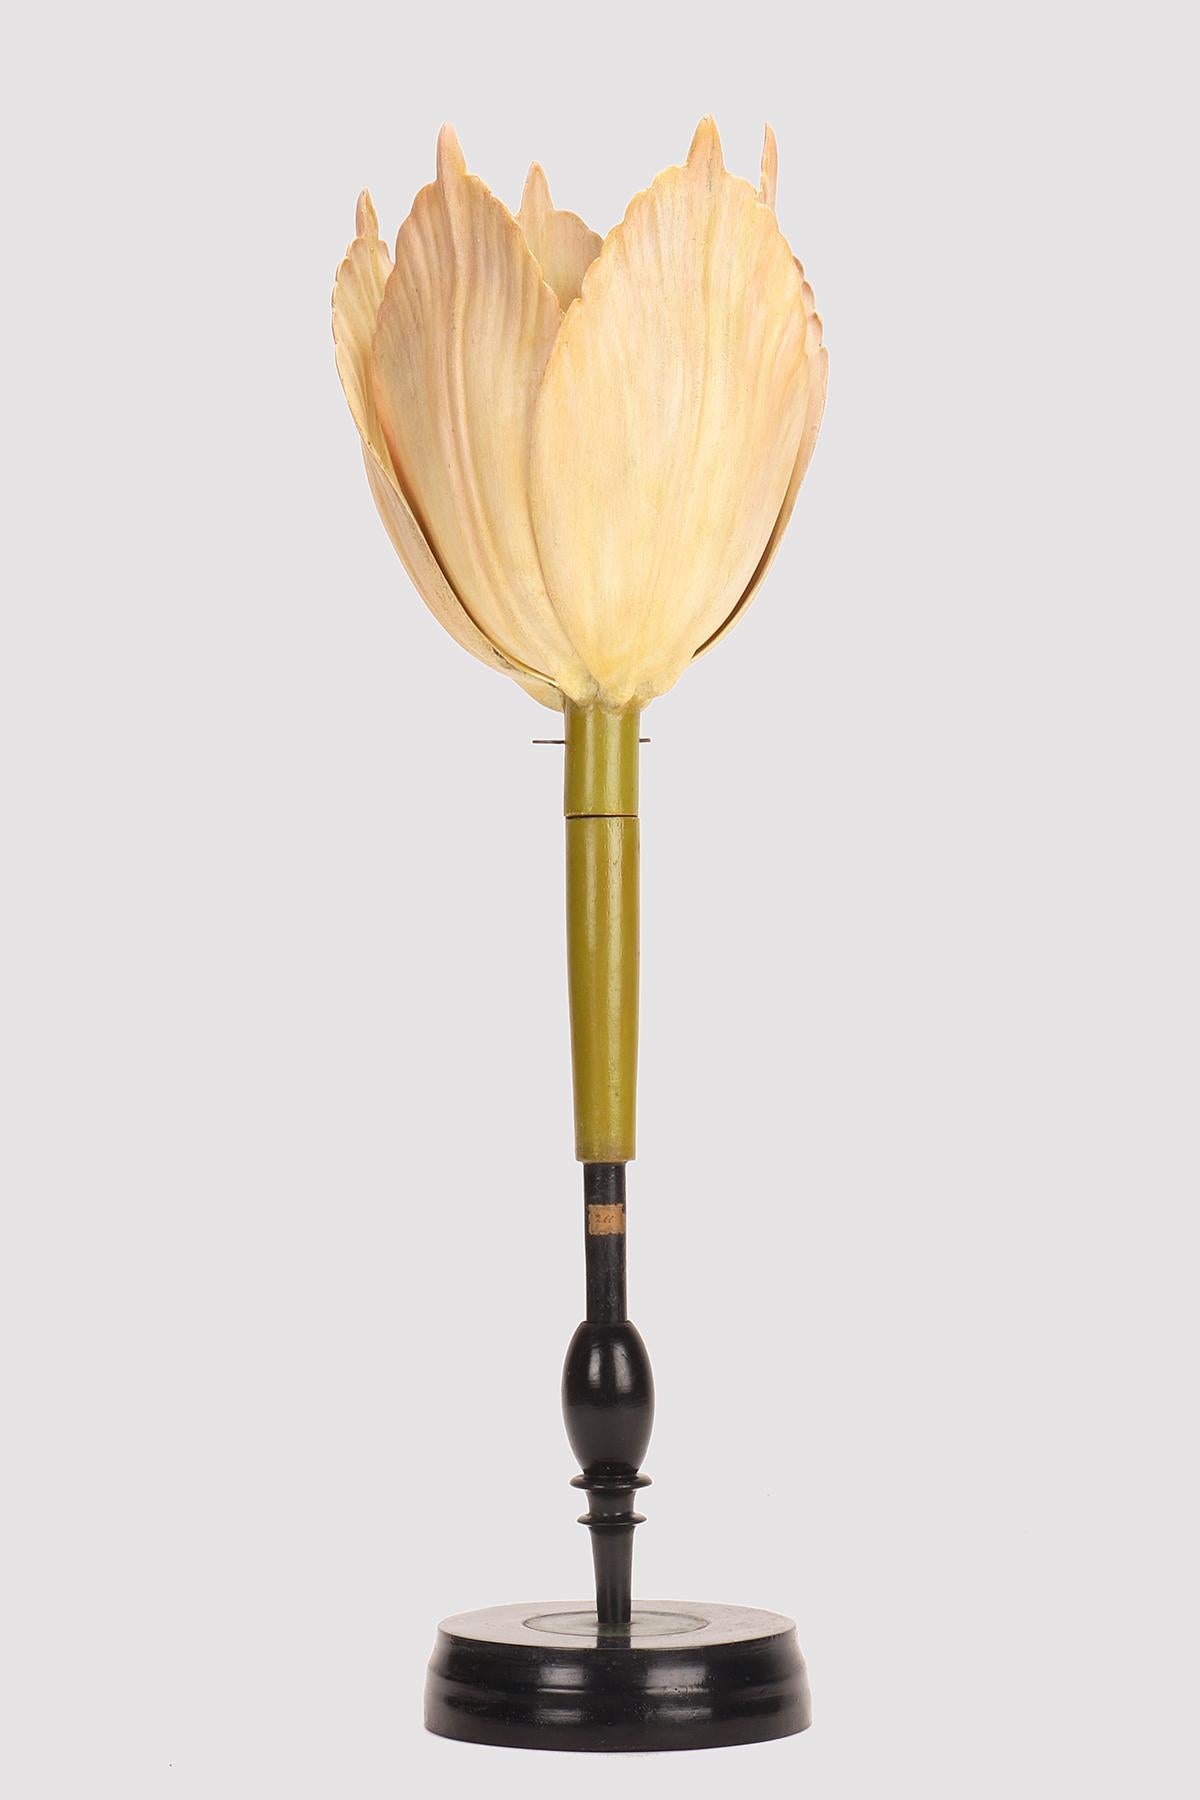 Rare modèle botanique Brendel de Tulipa gesneriana, la Tulipe N.200 (Liliaceae), de couleur rose clair. La base ronde en bois ébonisé contient le modèle qui s'ouvre pour révéler la fleur. Le modèle peut être démonté pour montrer les différents